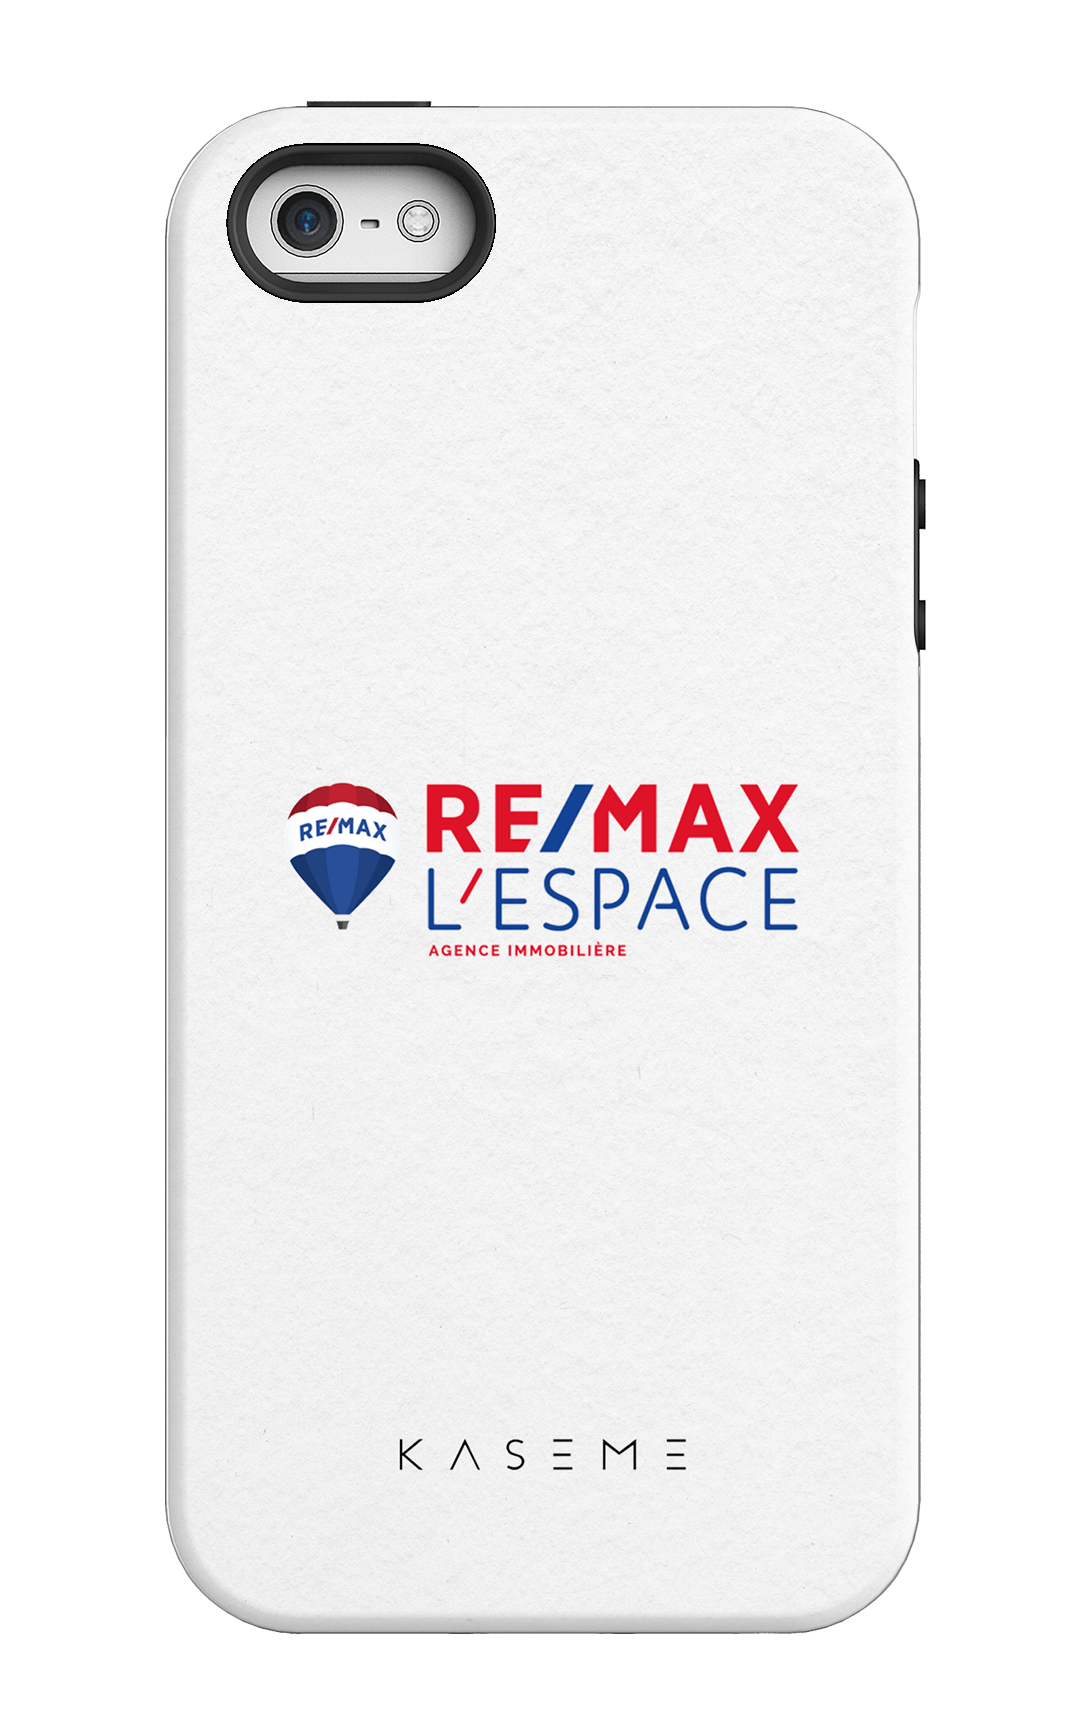 Remax L'Espace Blanc - iPhone 5/5S/SE